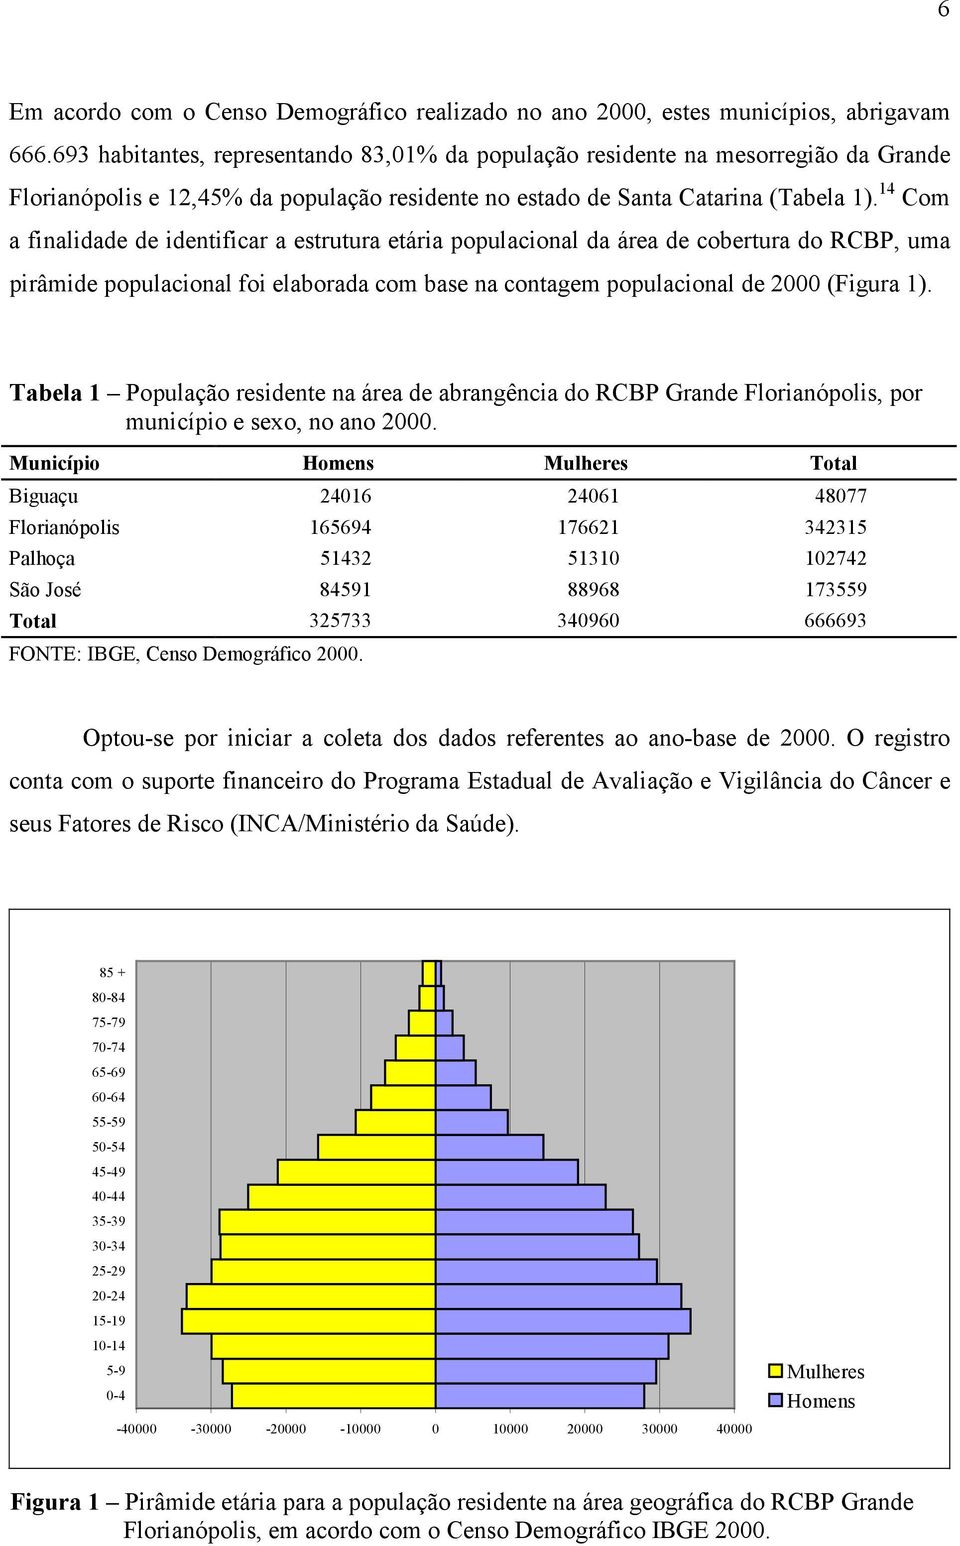 14 Com a finalidade de identificar a estrutura etária populacional da área de cobertura do RCBP, uma pirâmide populacional foi elaborada com base na contagem populacional de 2000 (Figura 1).